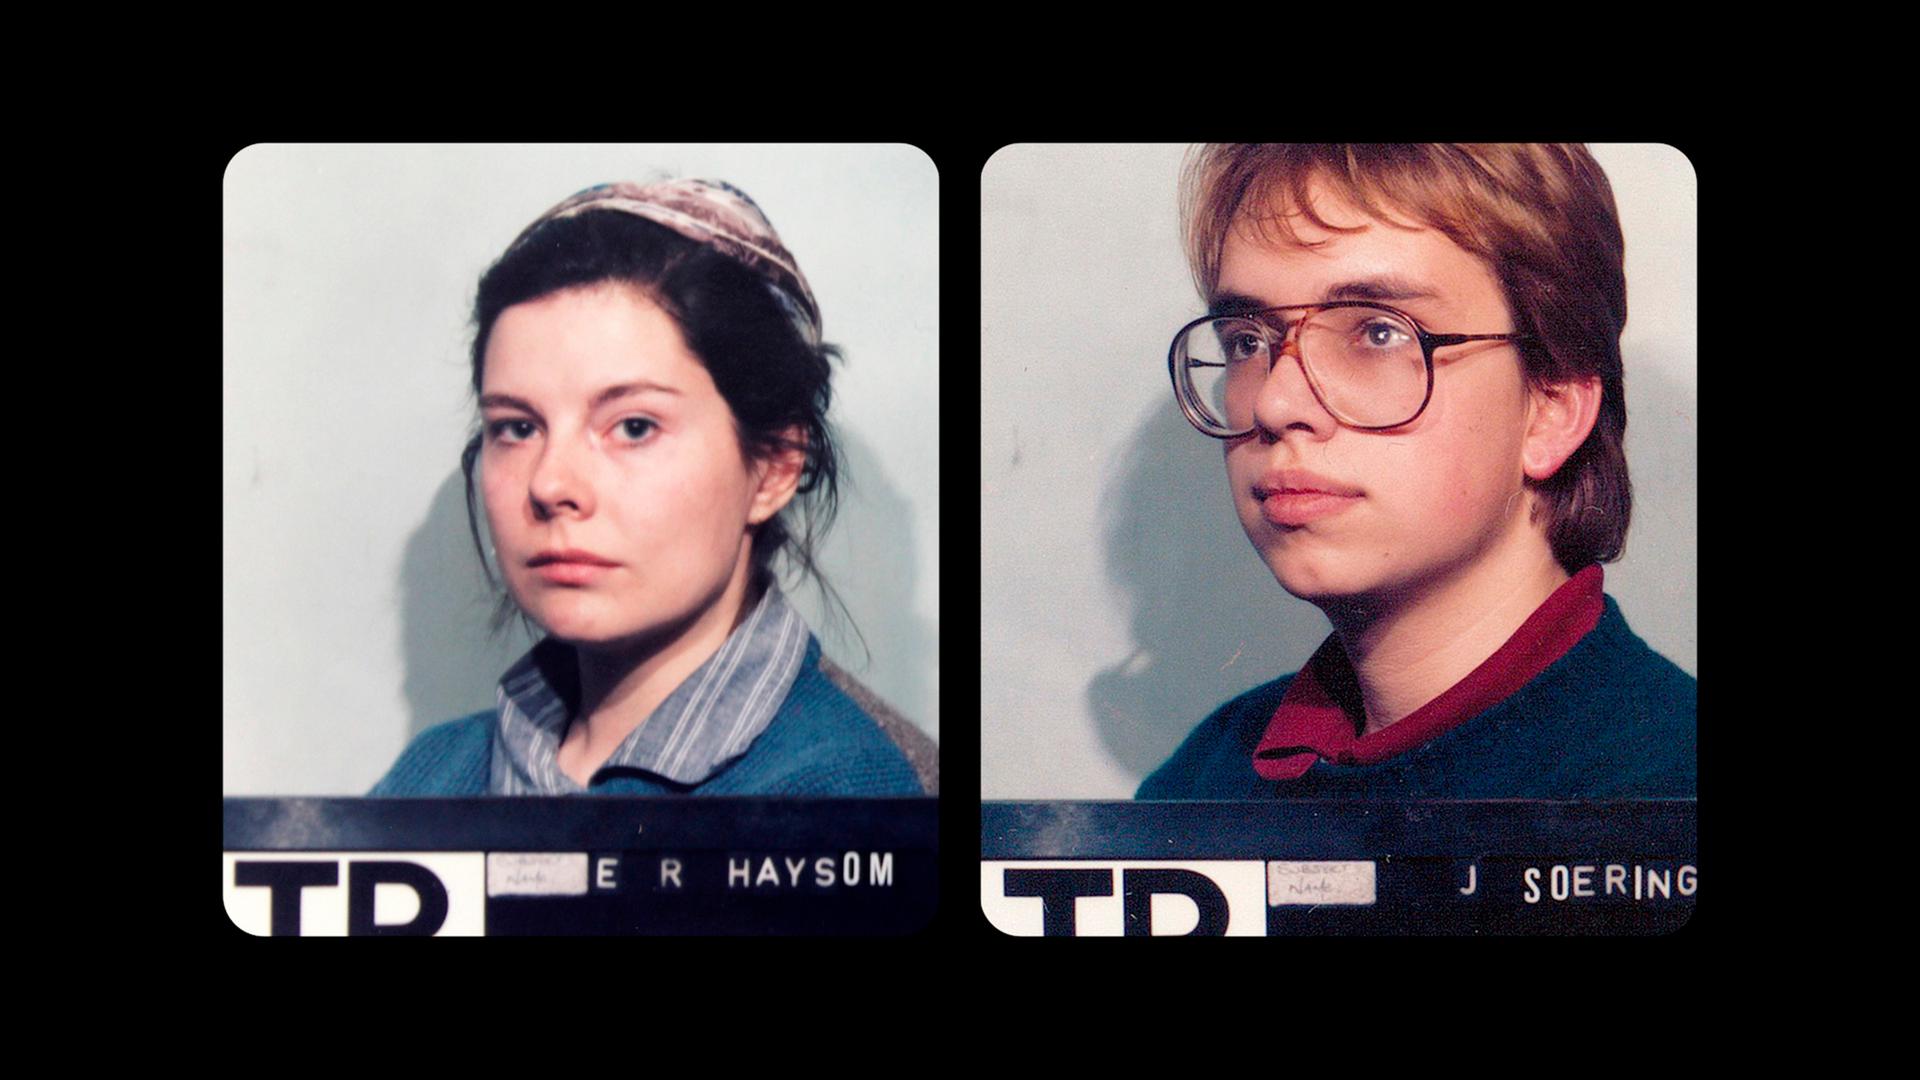 Polizeifotos: 1986 werden Elizabeth Haysom, Tochter der ermordeten Opfer, und ihr damaliger Freund Jens Söring in London festgenommen. Aus: "Der Fall Jens Söring - Mord. Macht. Medien."